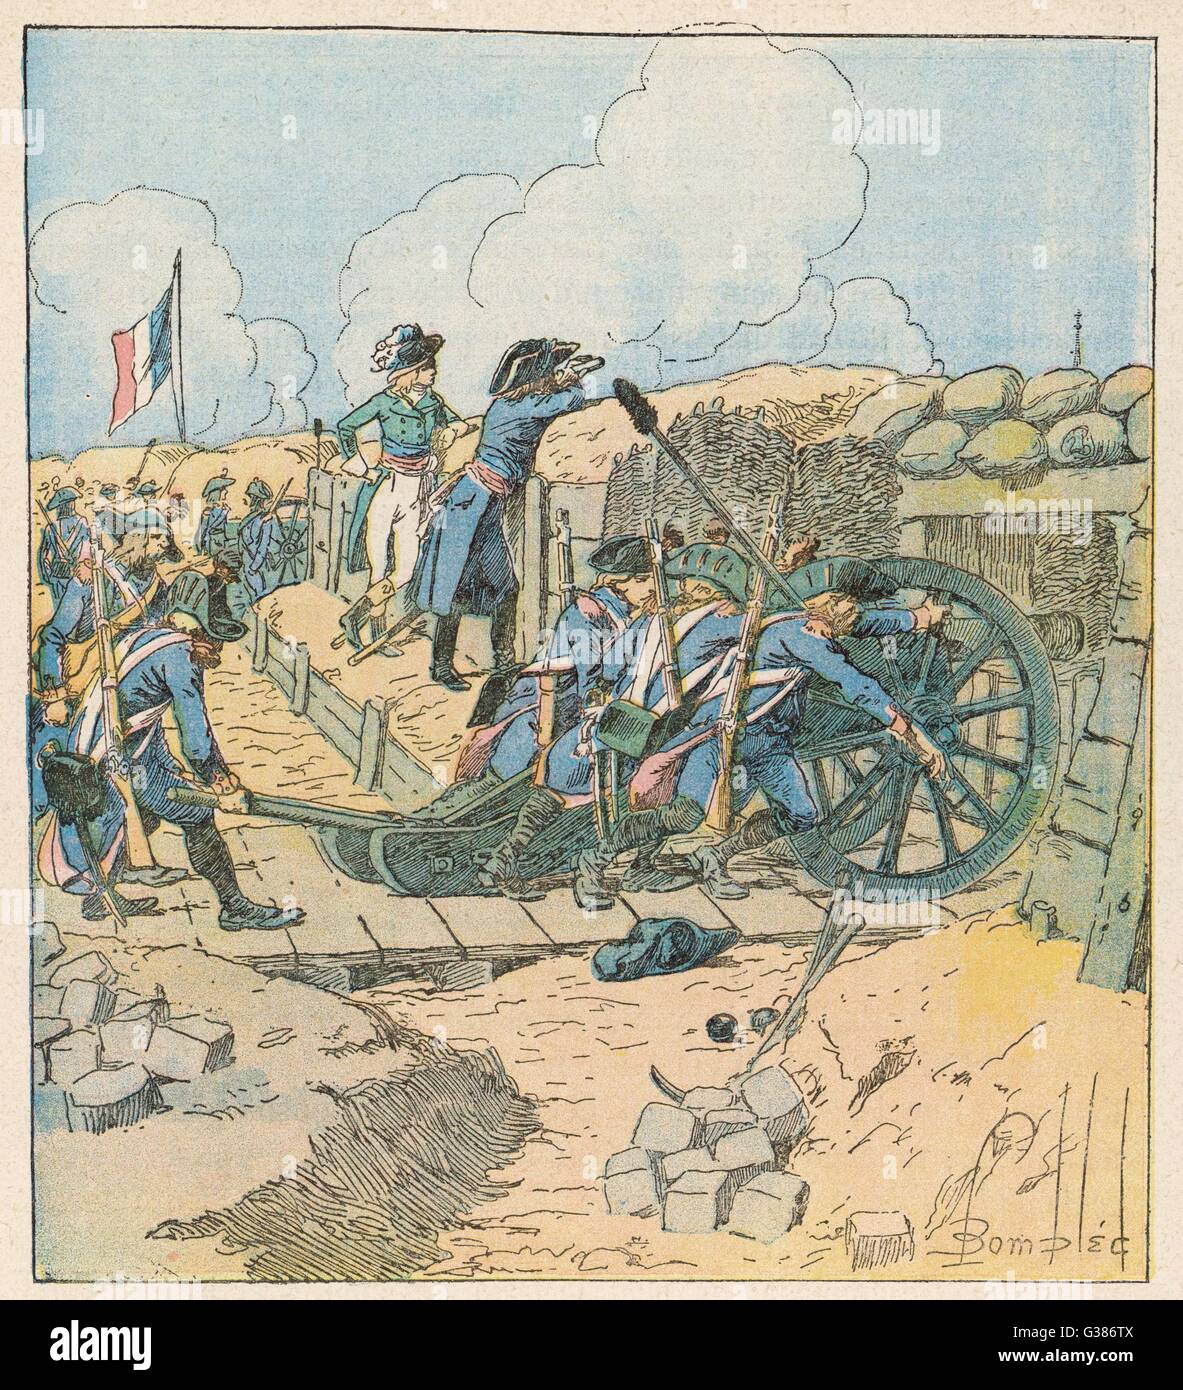 Seine erfolgreiche Belagerung von Toulon zwingt die Engländer zur Evakuierung der Stadt Datum: Dezember 1793 Stockfoto